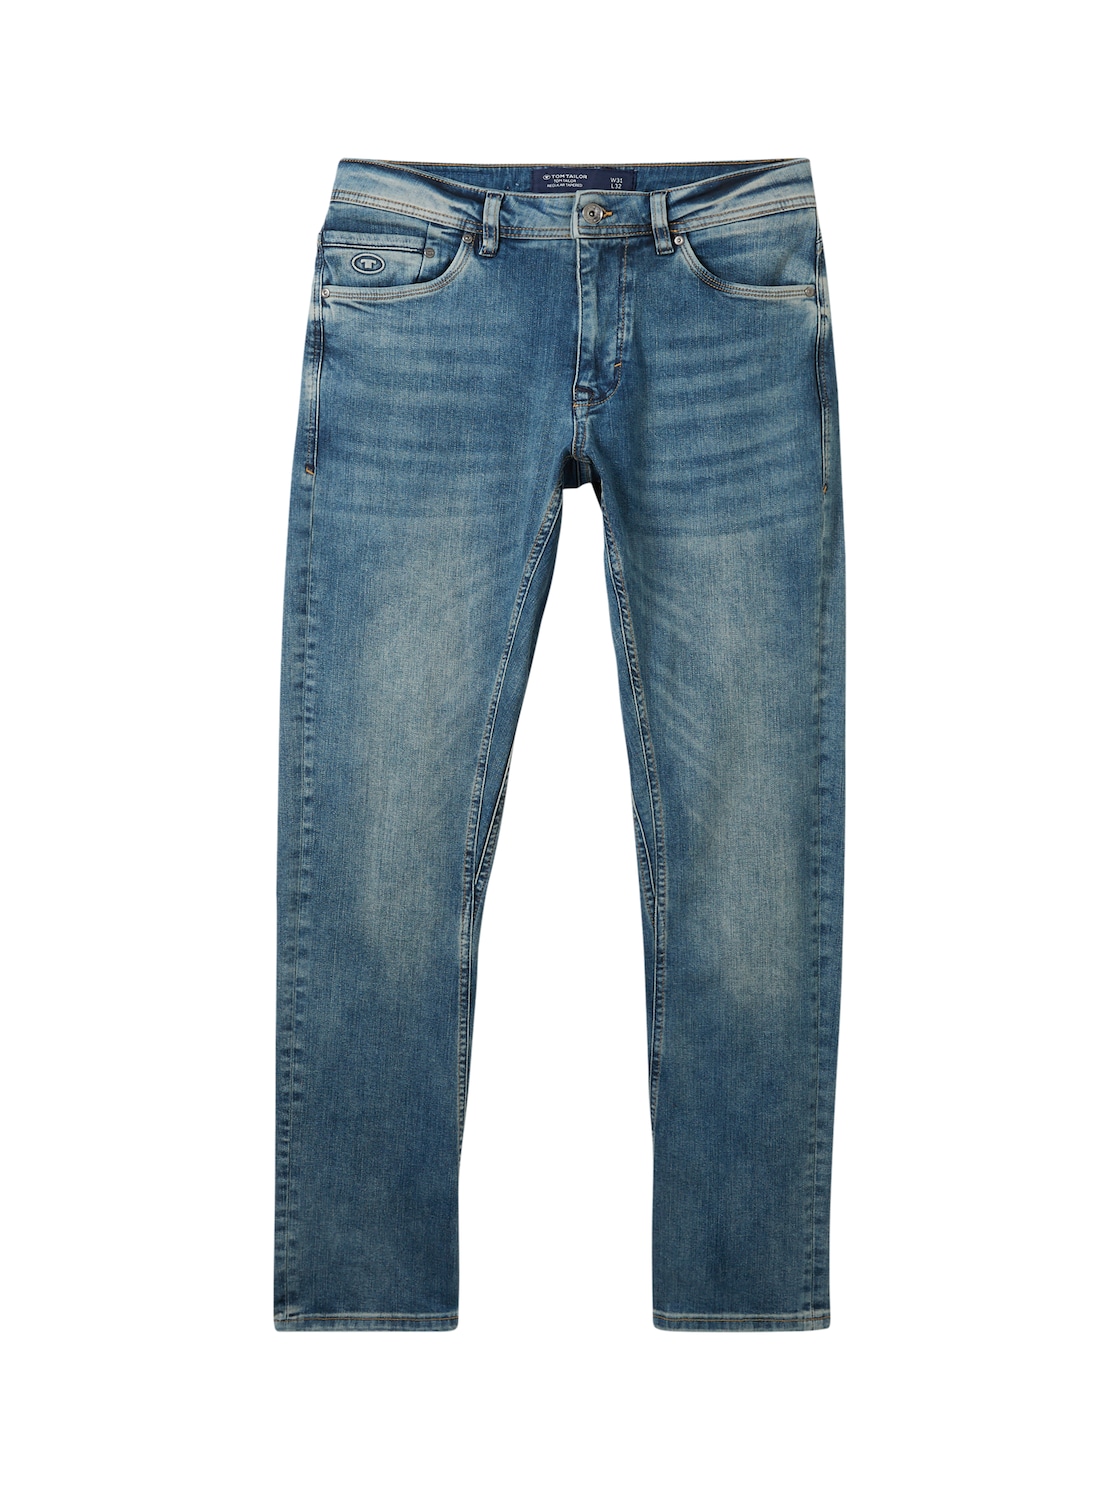 TOM TAILOR Herren Regular Tapered Jeans mit recycelter Baumwolle, blau, Uni, Gr. 31/34 von Tom Tailor